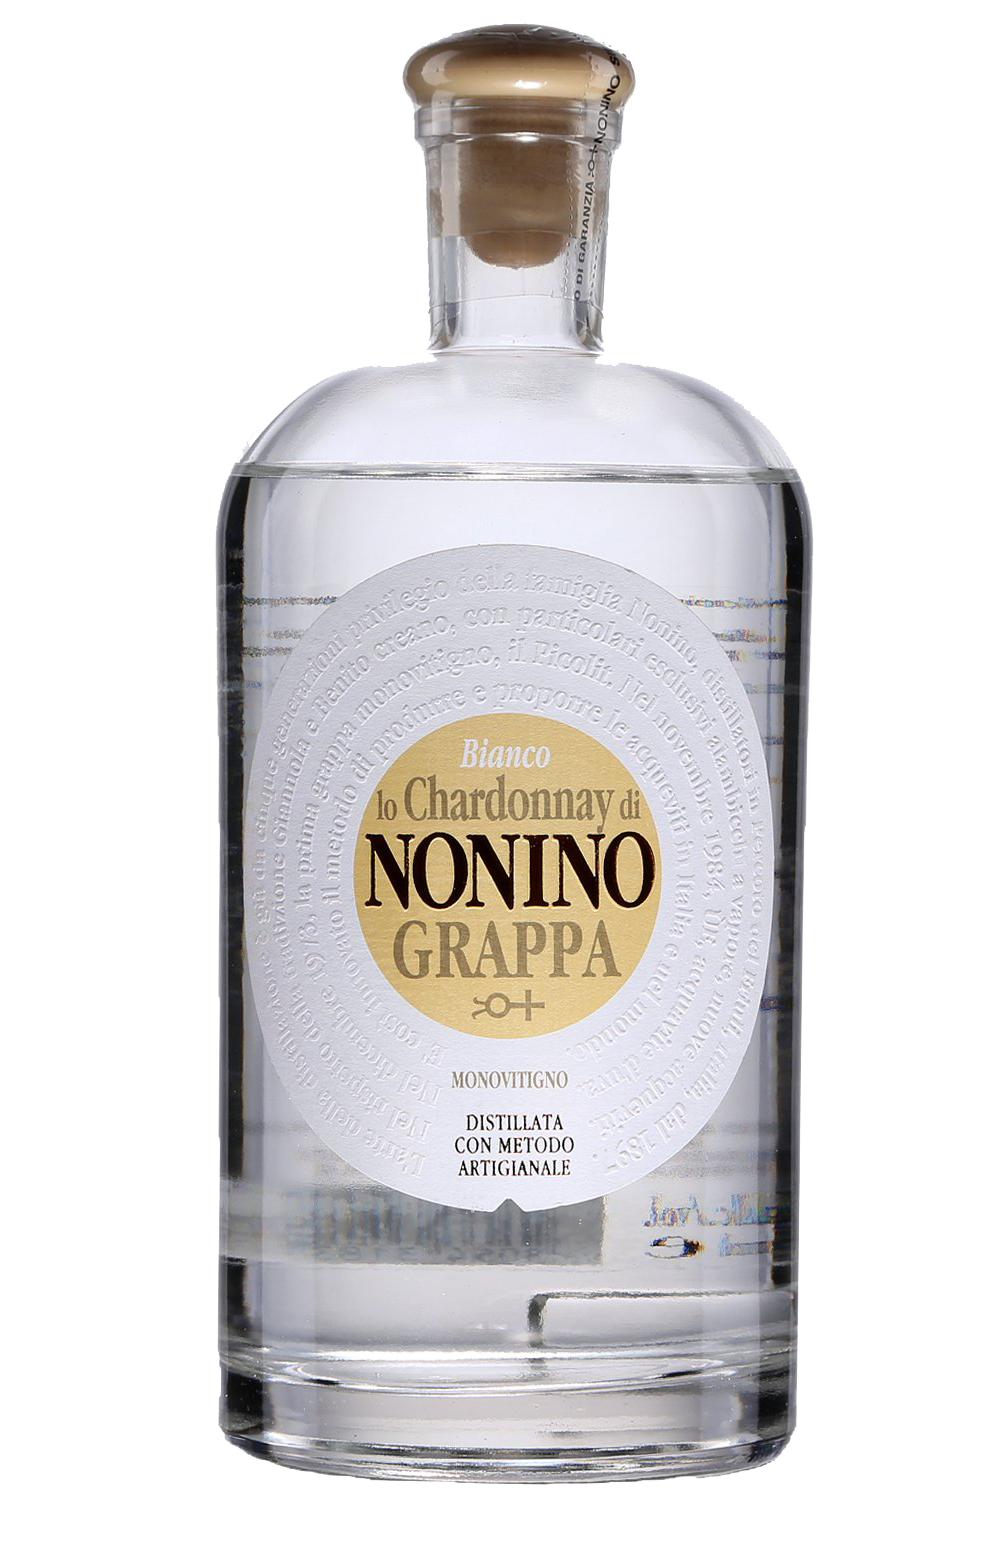 Nonino Chardonnay